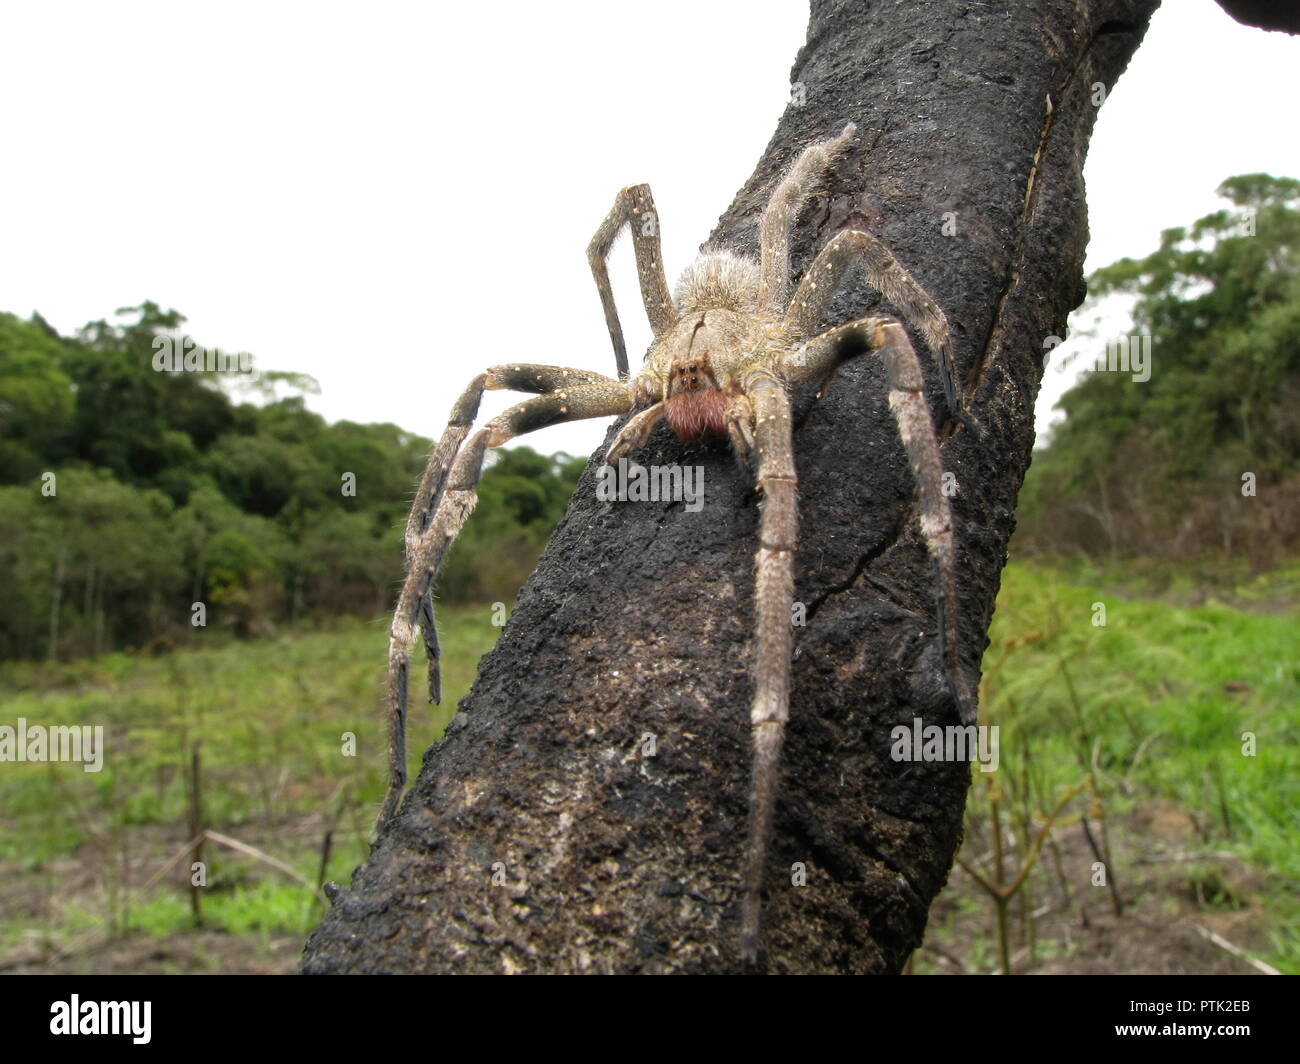 Brasilianische wandering Spinne (Phoneutria) auf verbranntem Holz, giftige Spinne aus Südamerika, auch bekannt als Armadeira, mit wenigen fatalen Biss Unfälle. Stockfoto